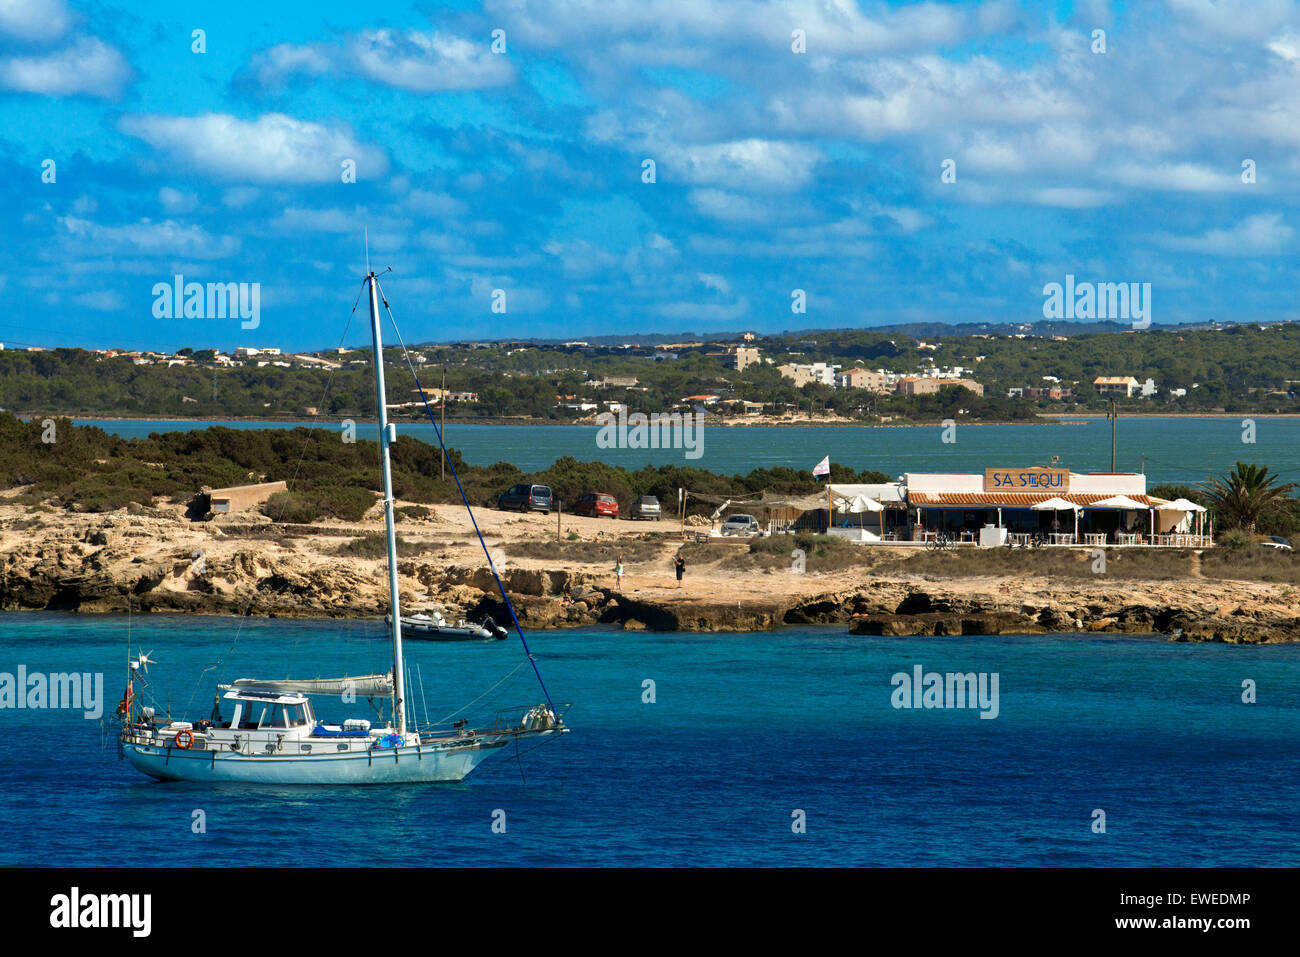 Sa Sequi Restaurant, plage Cala Savina, Formentera island, Îles Baléares, Espagne. La cuisine méditerranéenne. Un yacht de voile. Banque D'Images